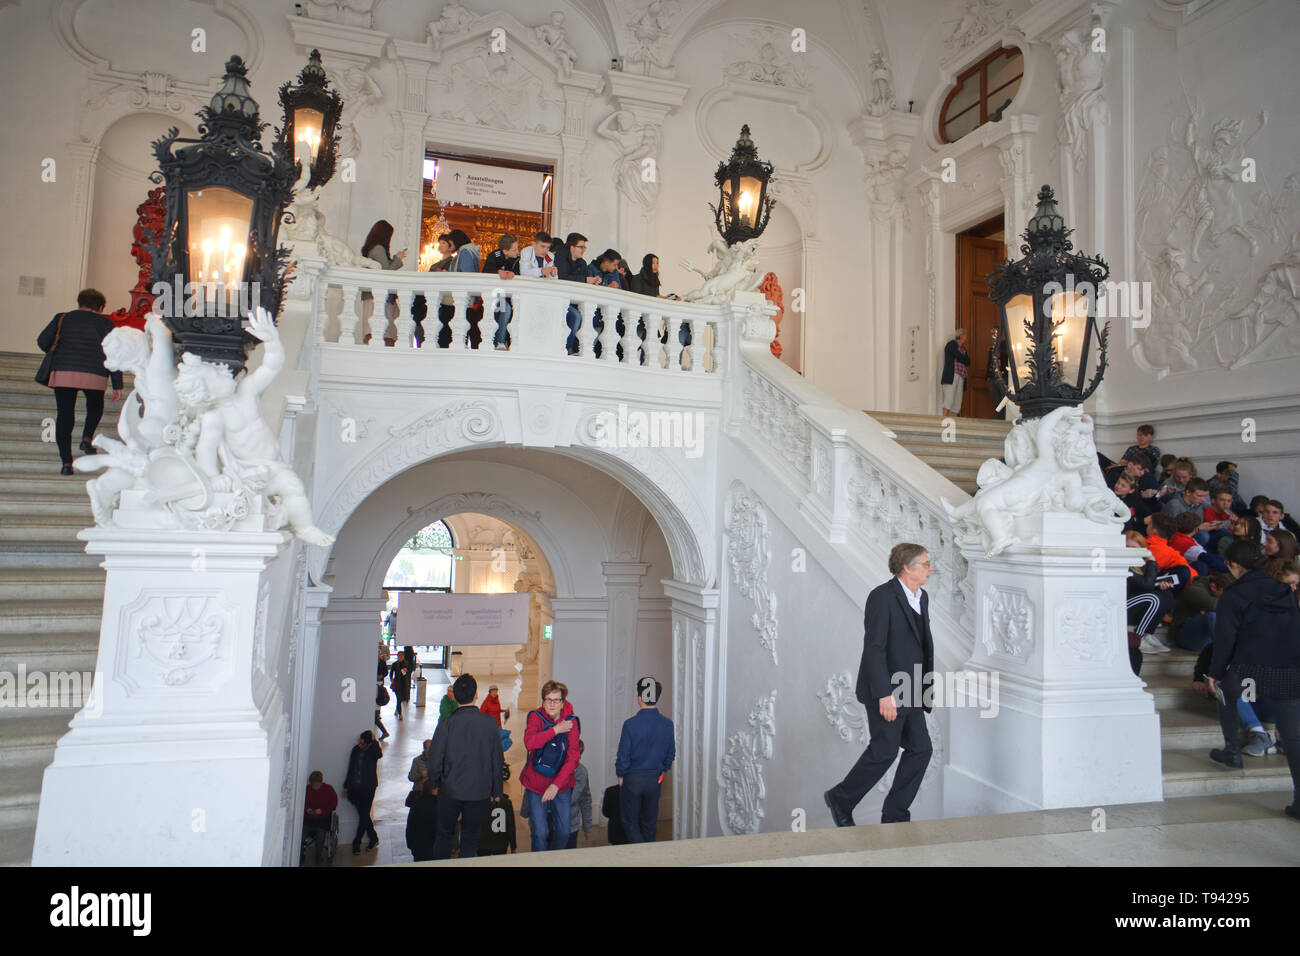 Marmor Treppe Treppe der Eingang im Inneren des berühmten Art Museum im Schloss Belvedere in Wien Österreich Stockfoto